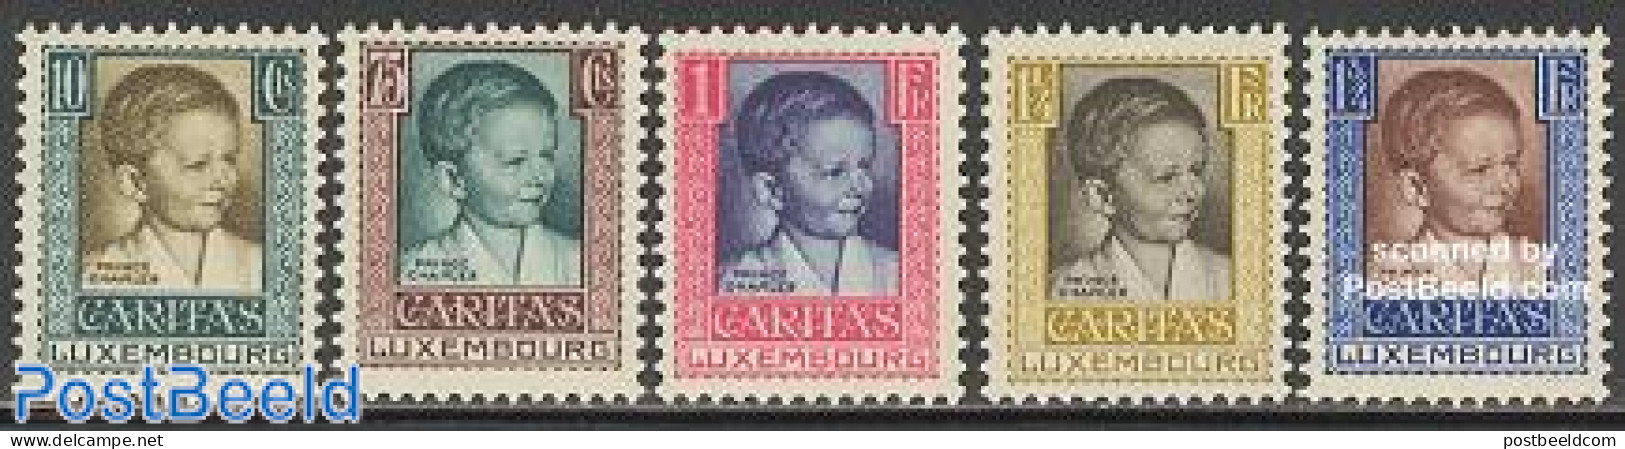 Luxemburg 1930 Children Aid 5v, Unused (hinged), History - Kings & Queens (Royalty) - Ongebruikt